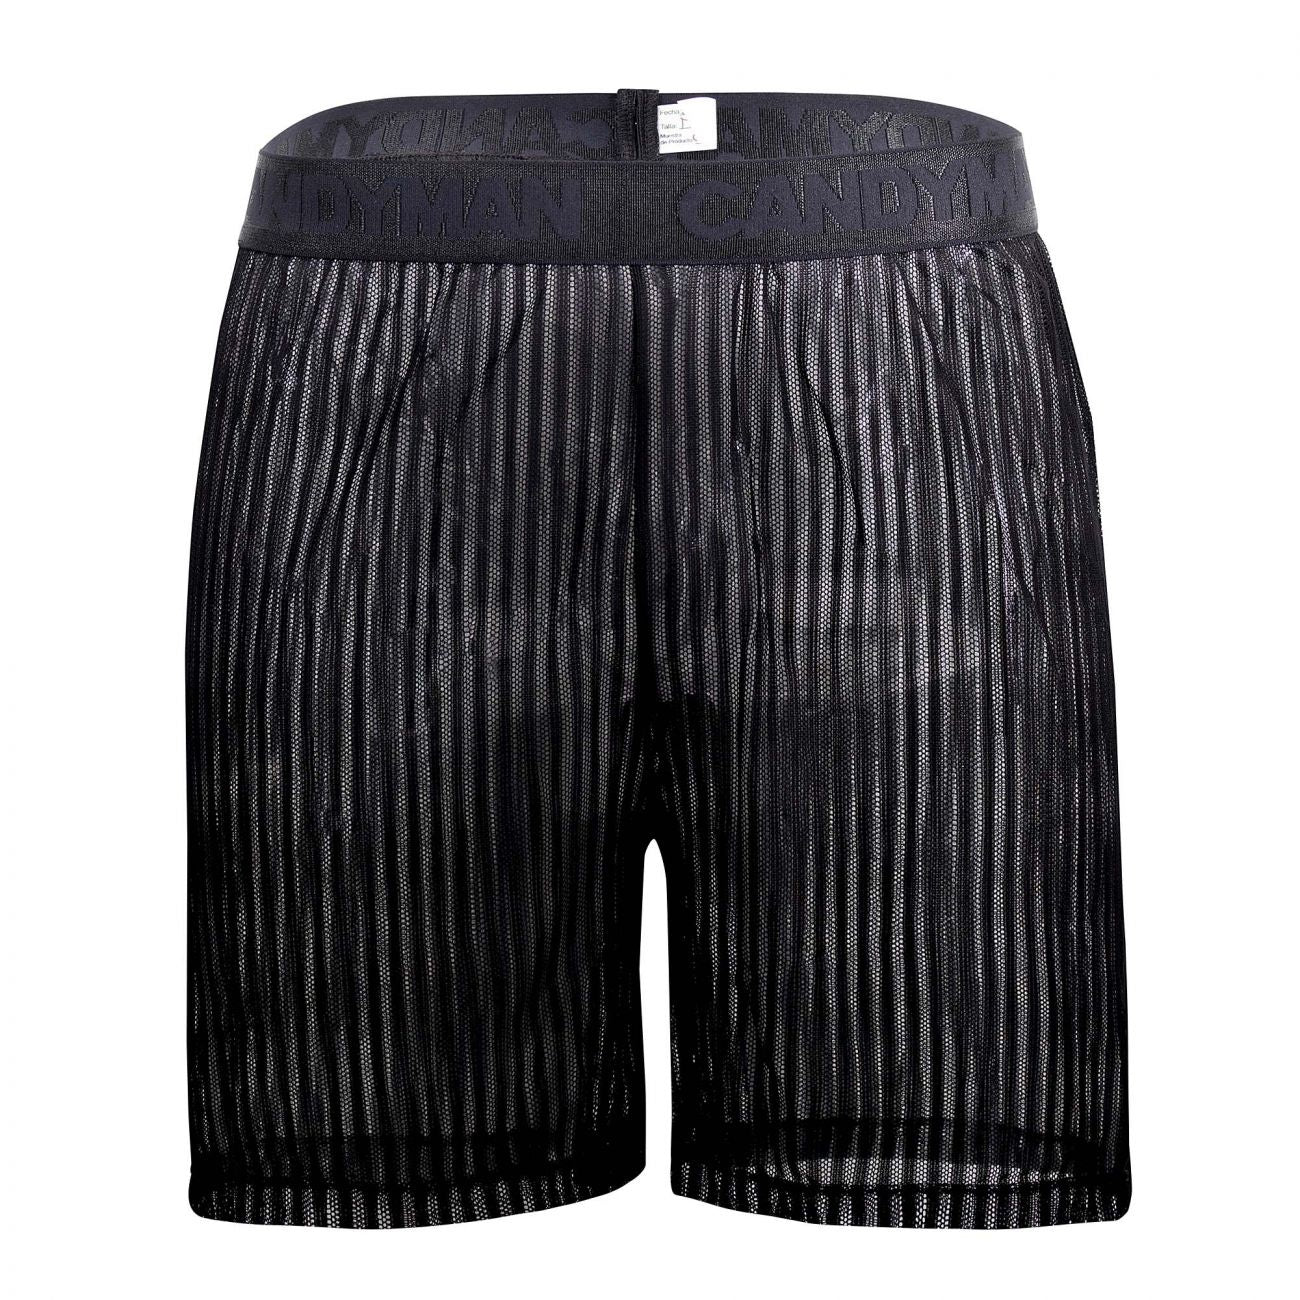 CandyMan 99497X Mesh Lounge Shorts Black Plus Sizes